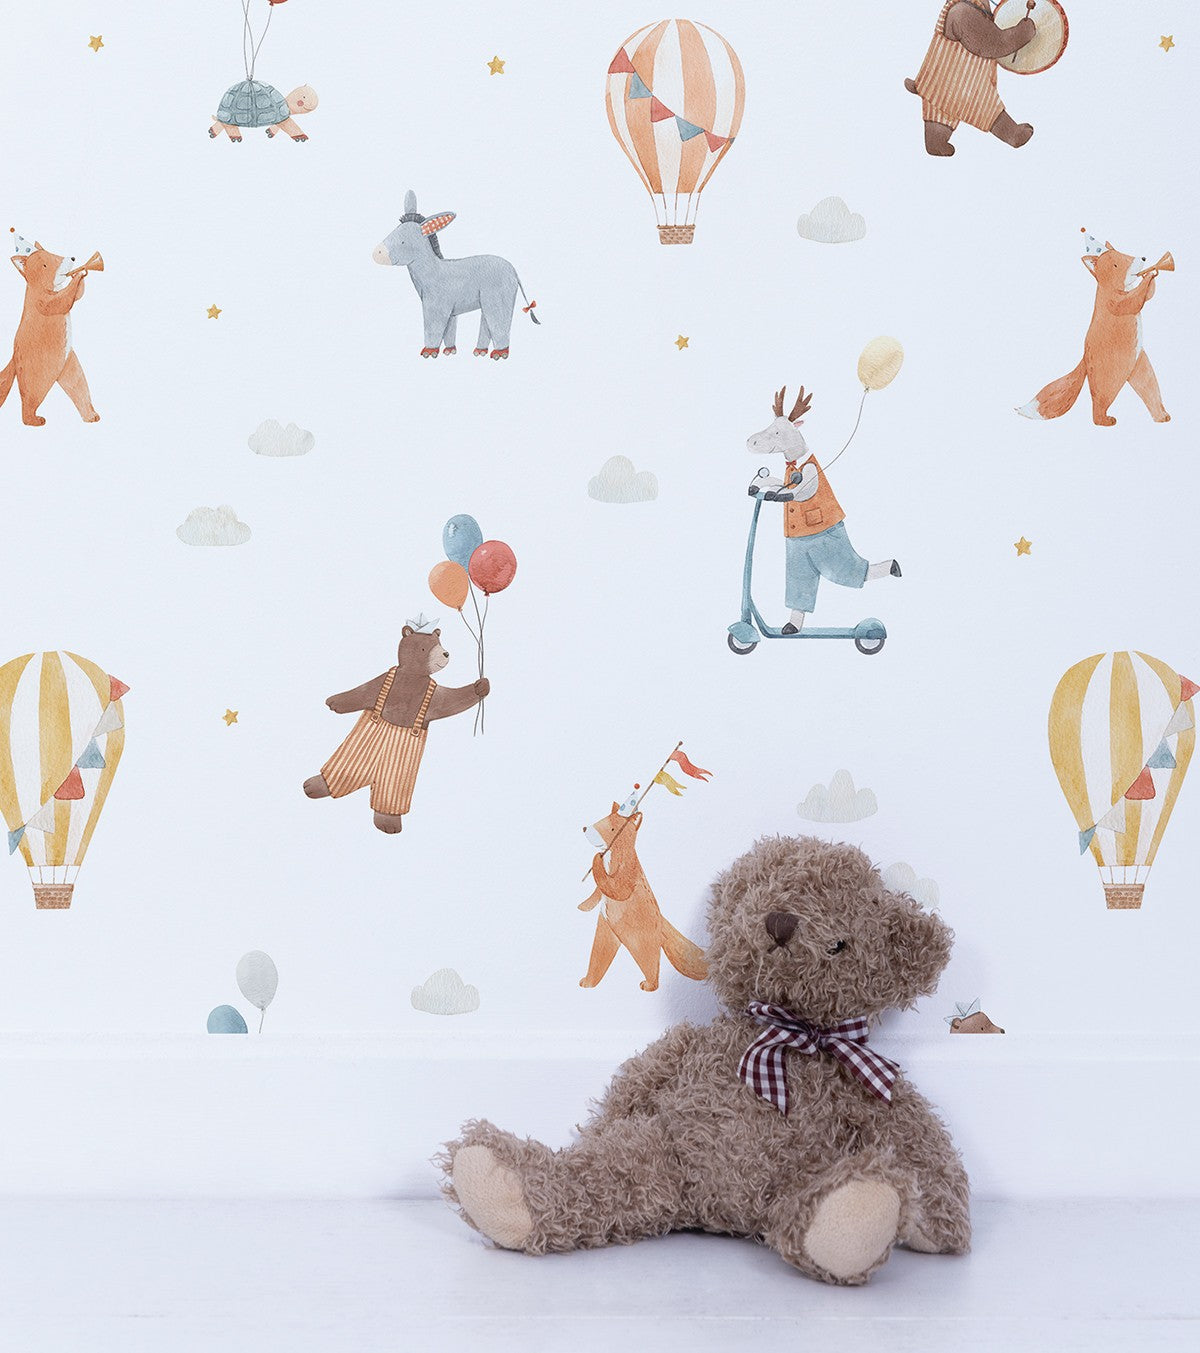 GENTLE FRIENDS - Children's wallpaper - Animals and hot-air balloons motif